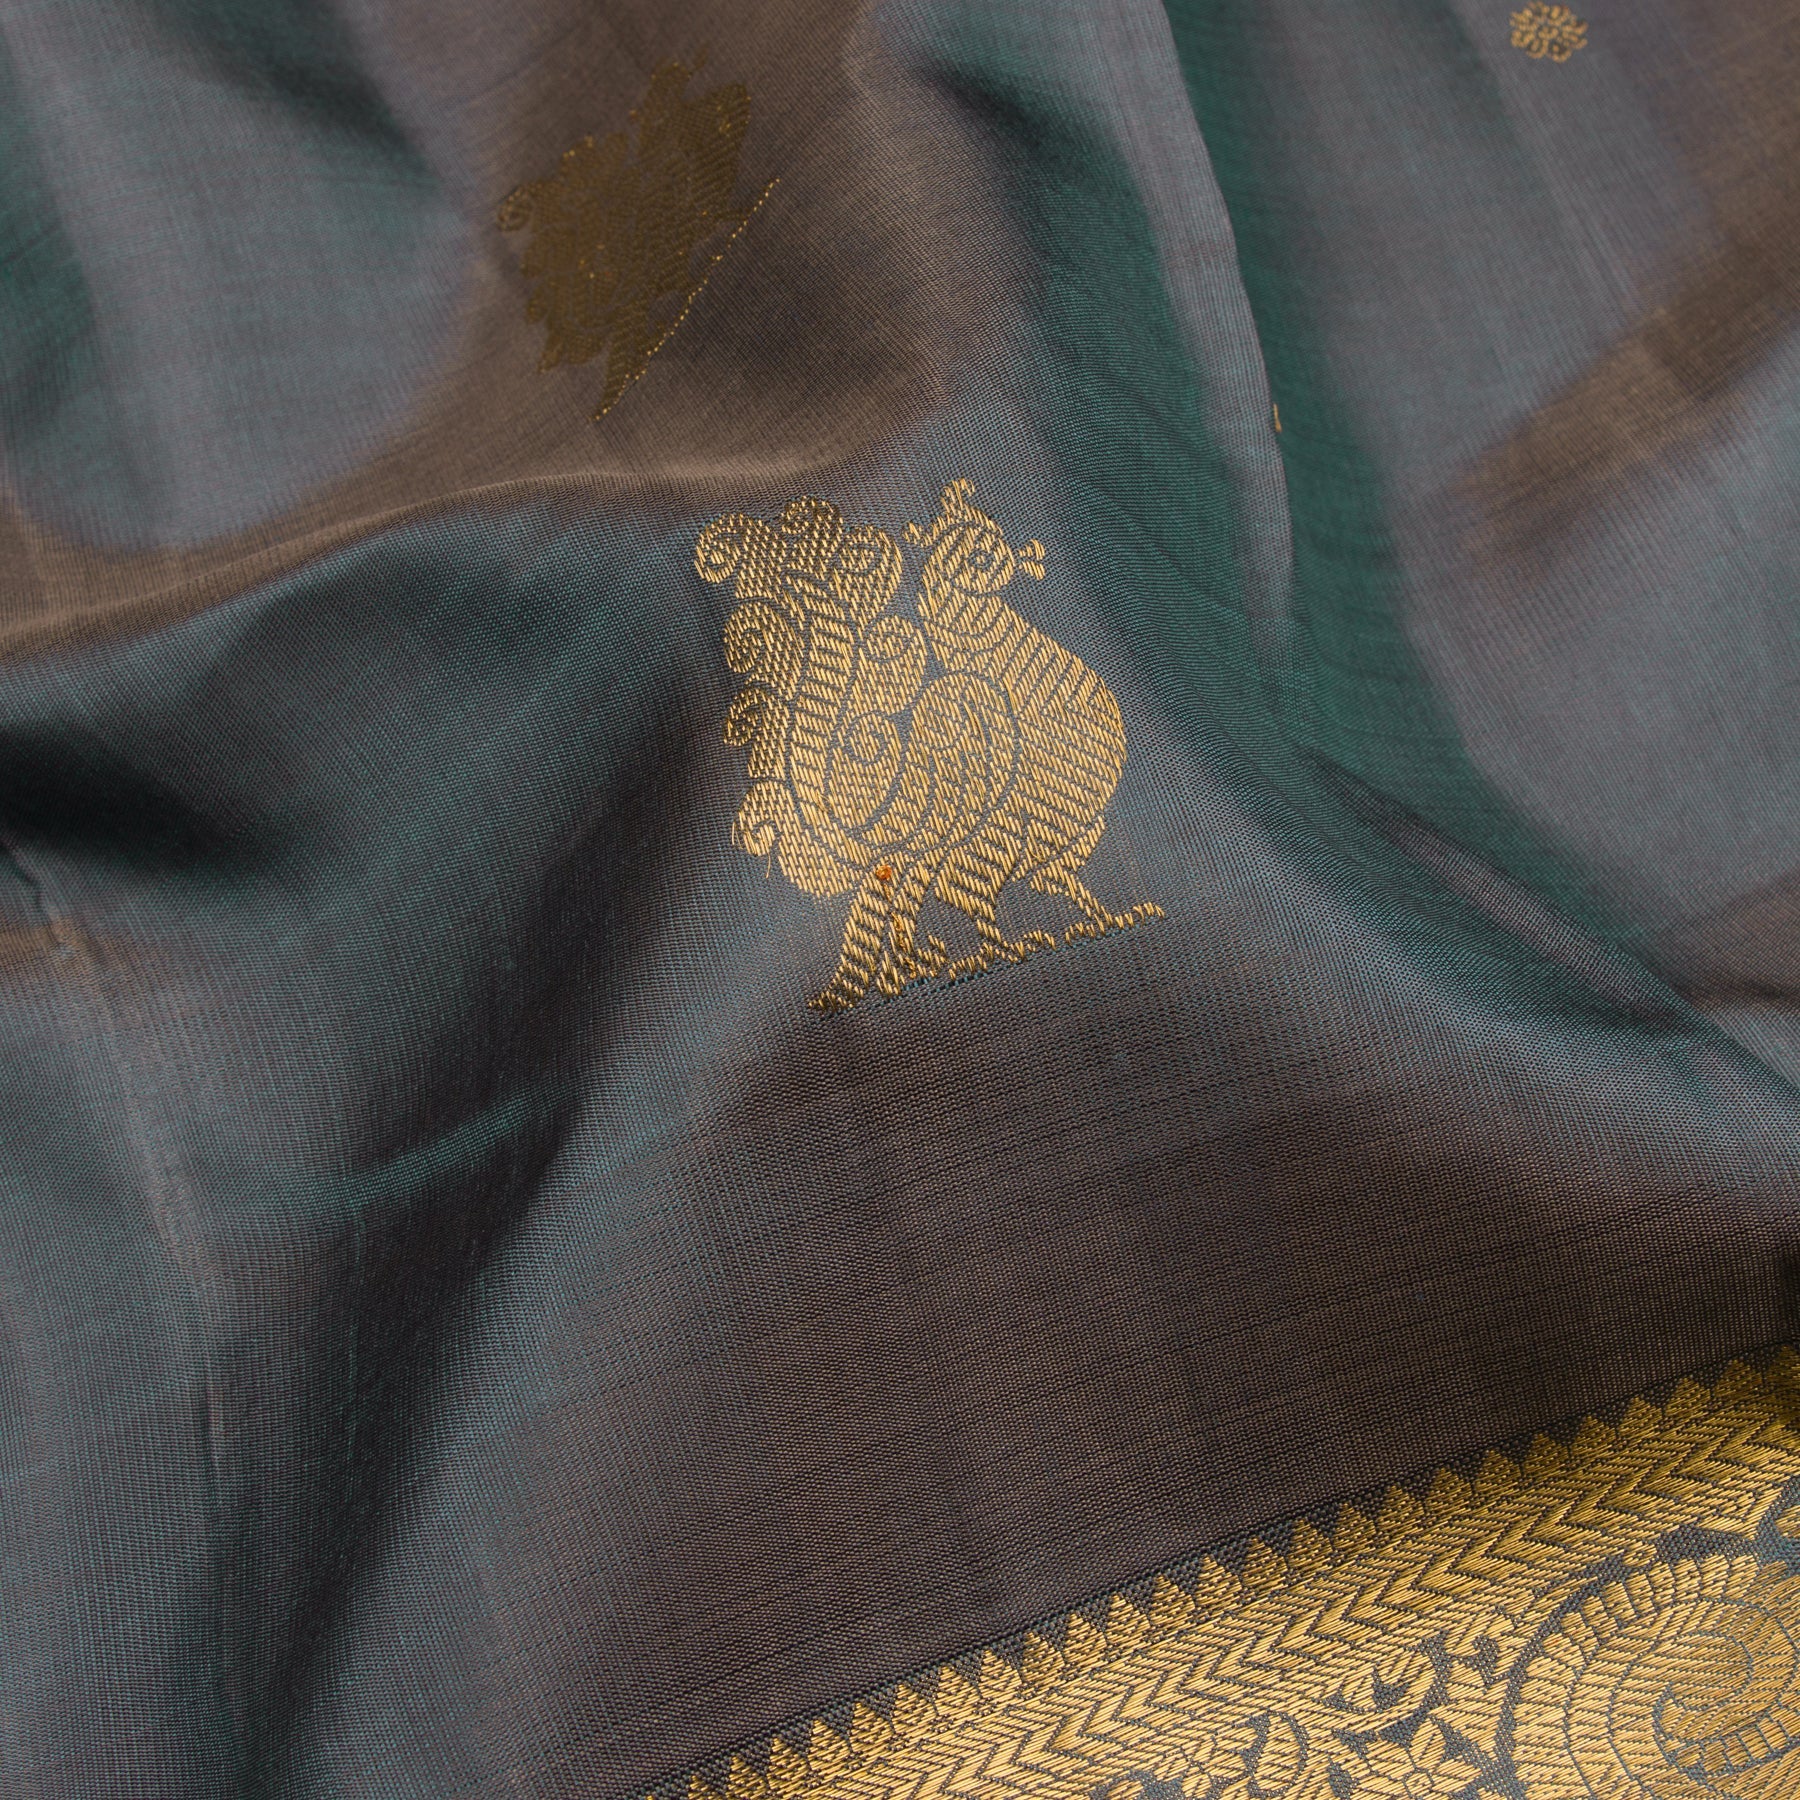 Kanakavalli Kanjivaram Silk Sari 22-595-HS001-13387 - Fabric View